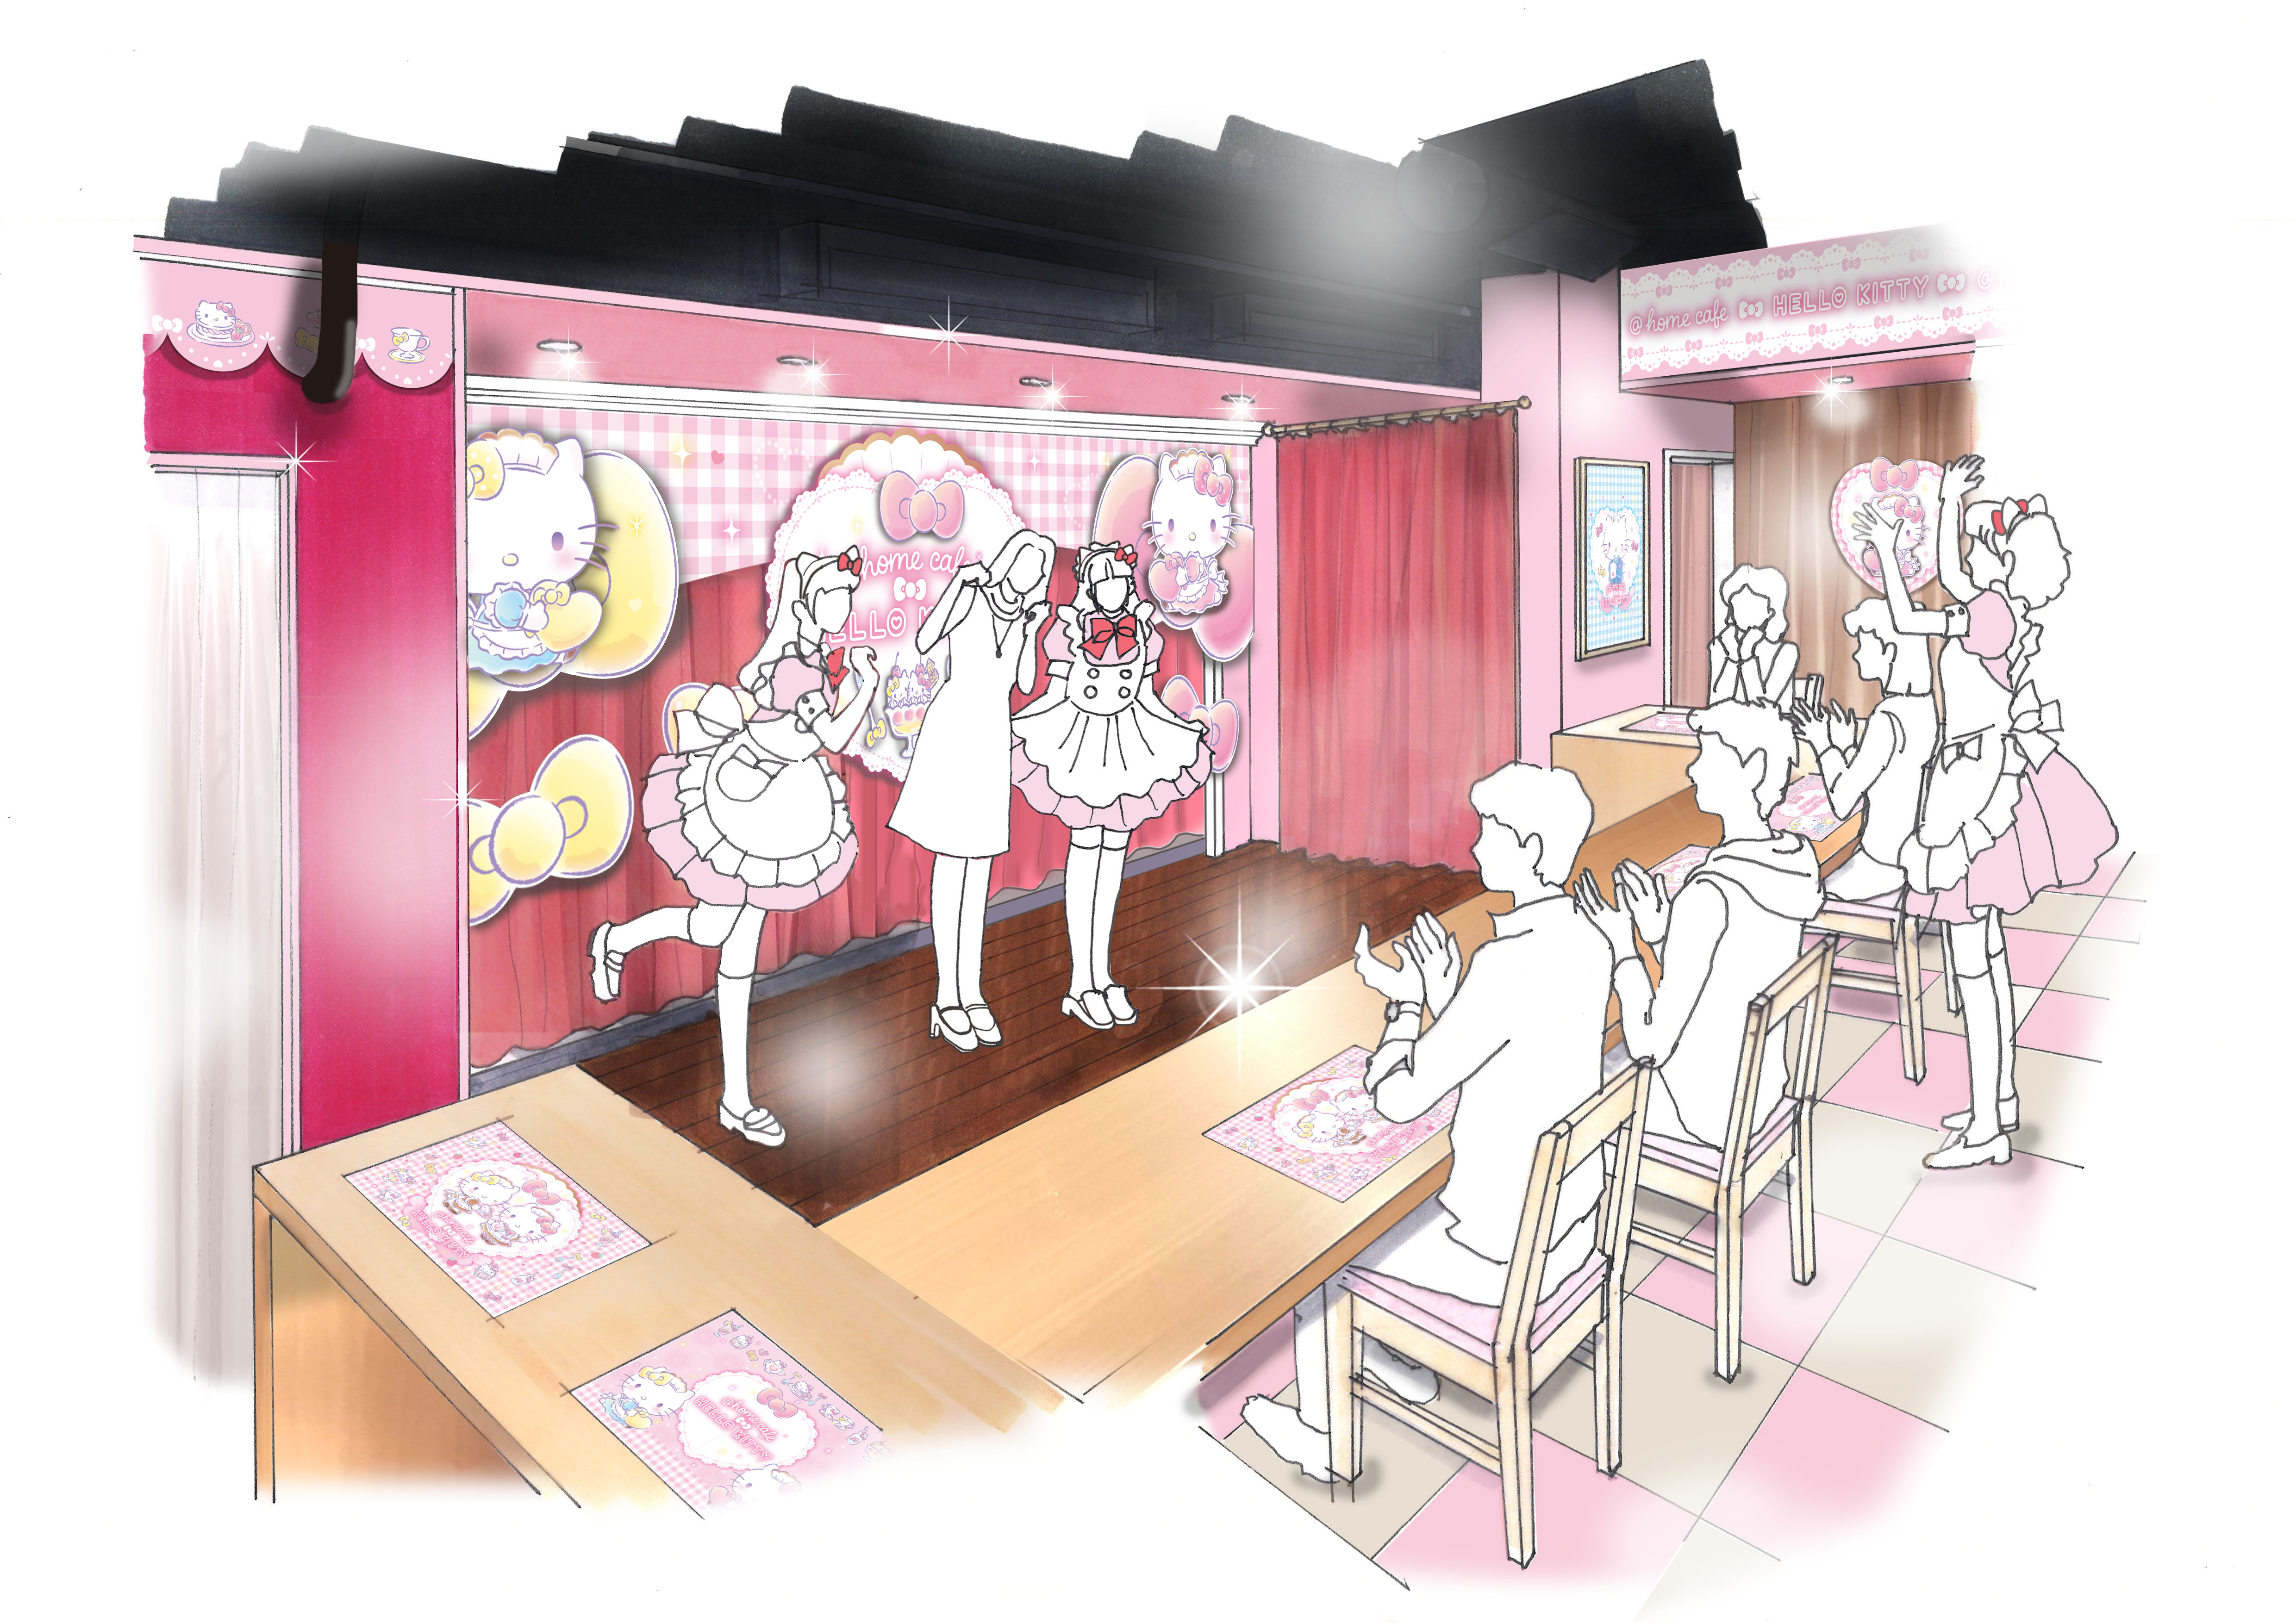 ほぉ むカフェ ハローキティ コラボカフェ開催のお知らせ 秋葉原 大阪のメイドカフェなら あっとほぉーむカフェ